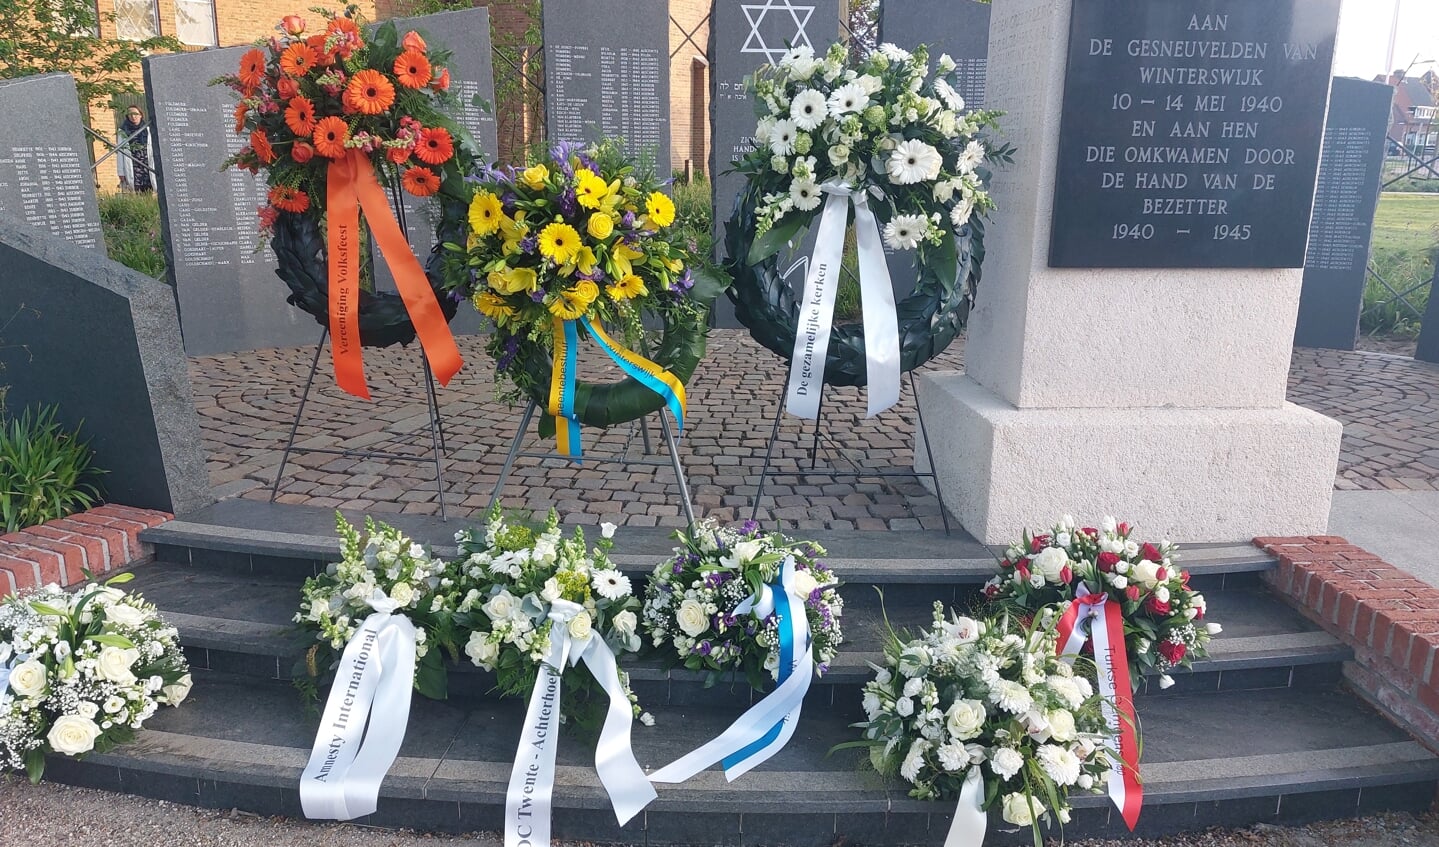  Eerbetoon met bloemen en kransen voor alle slachtoffers van oorlogsgeweld. Foto: Han van de Laar